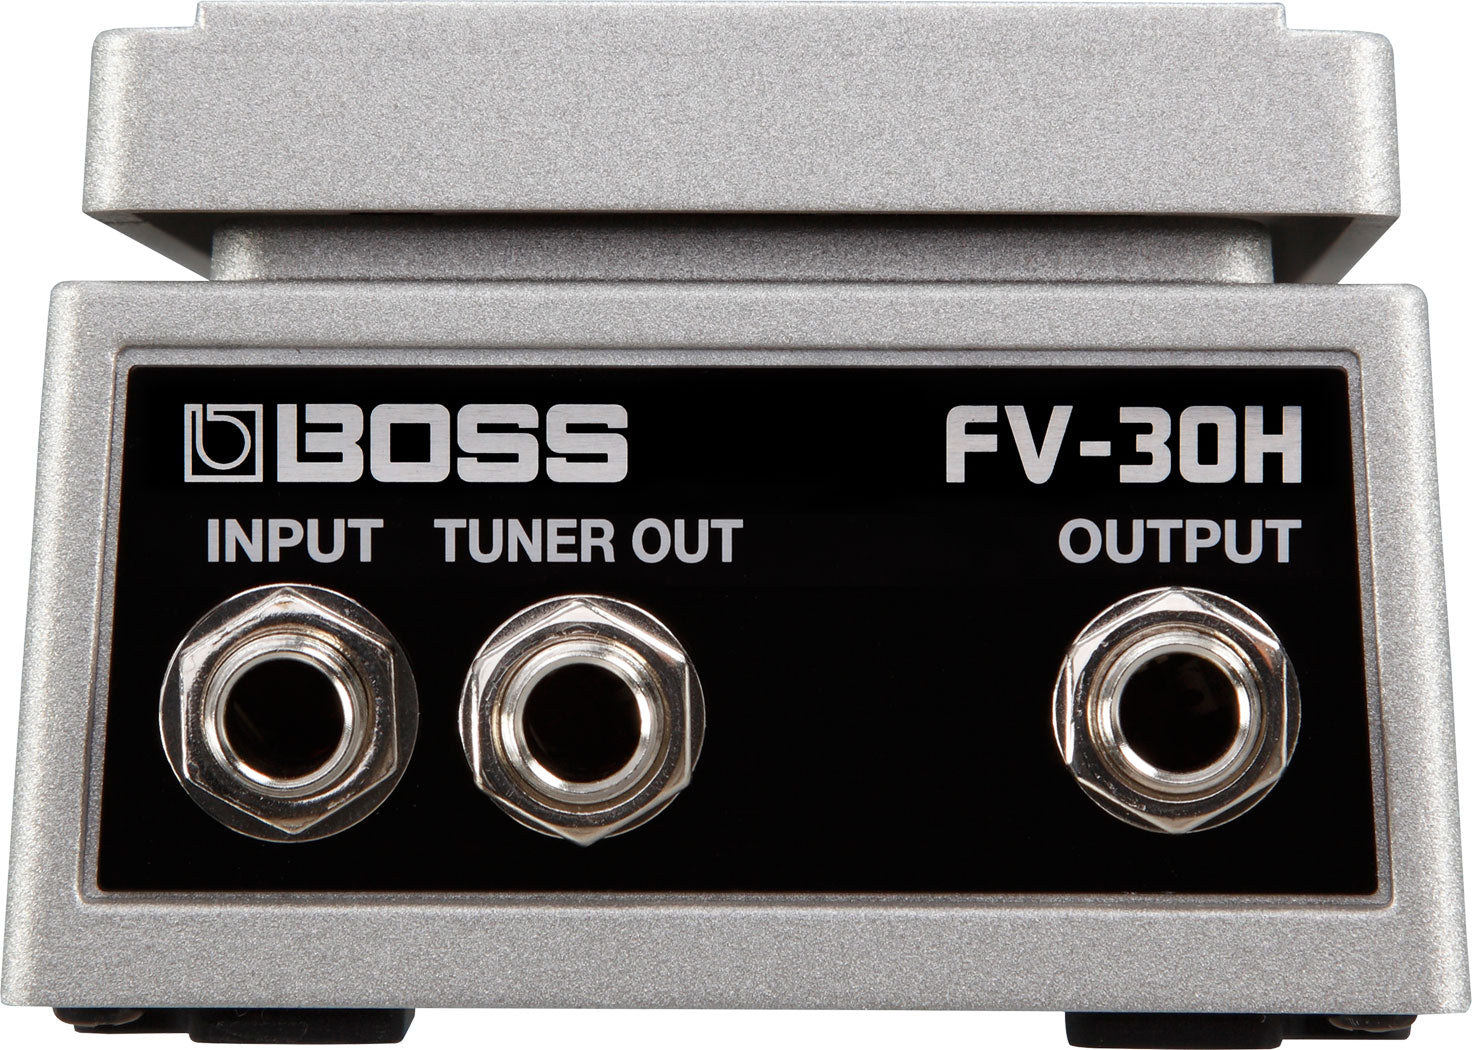 BOSS FV-30H Foot Volume (High-impedance) 音量控制腳踏